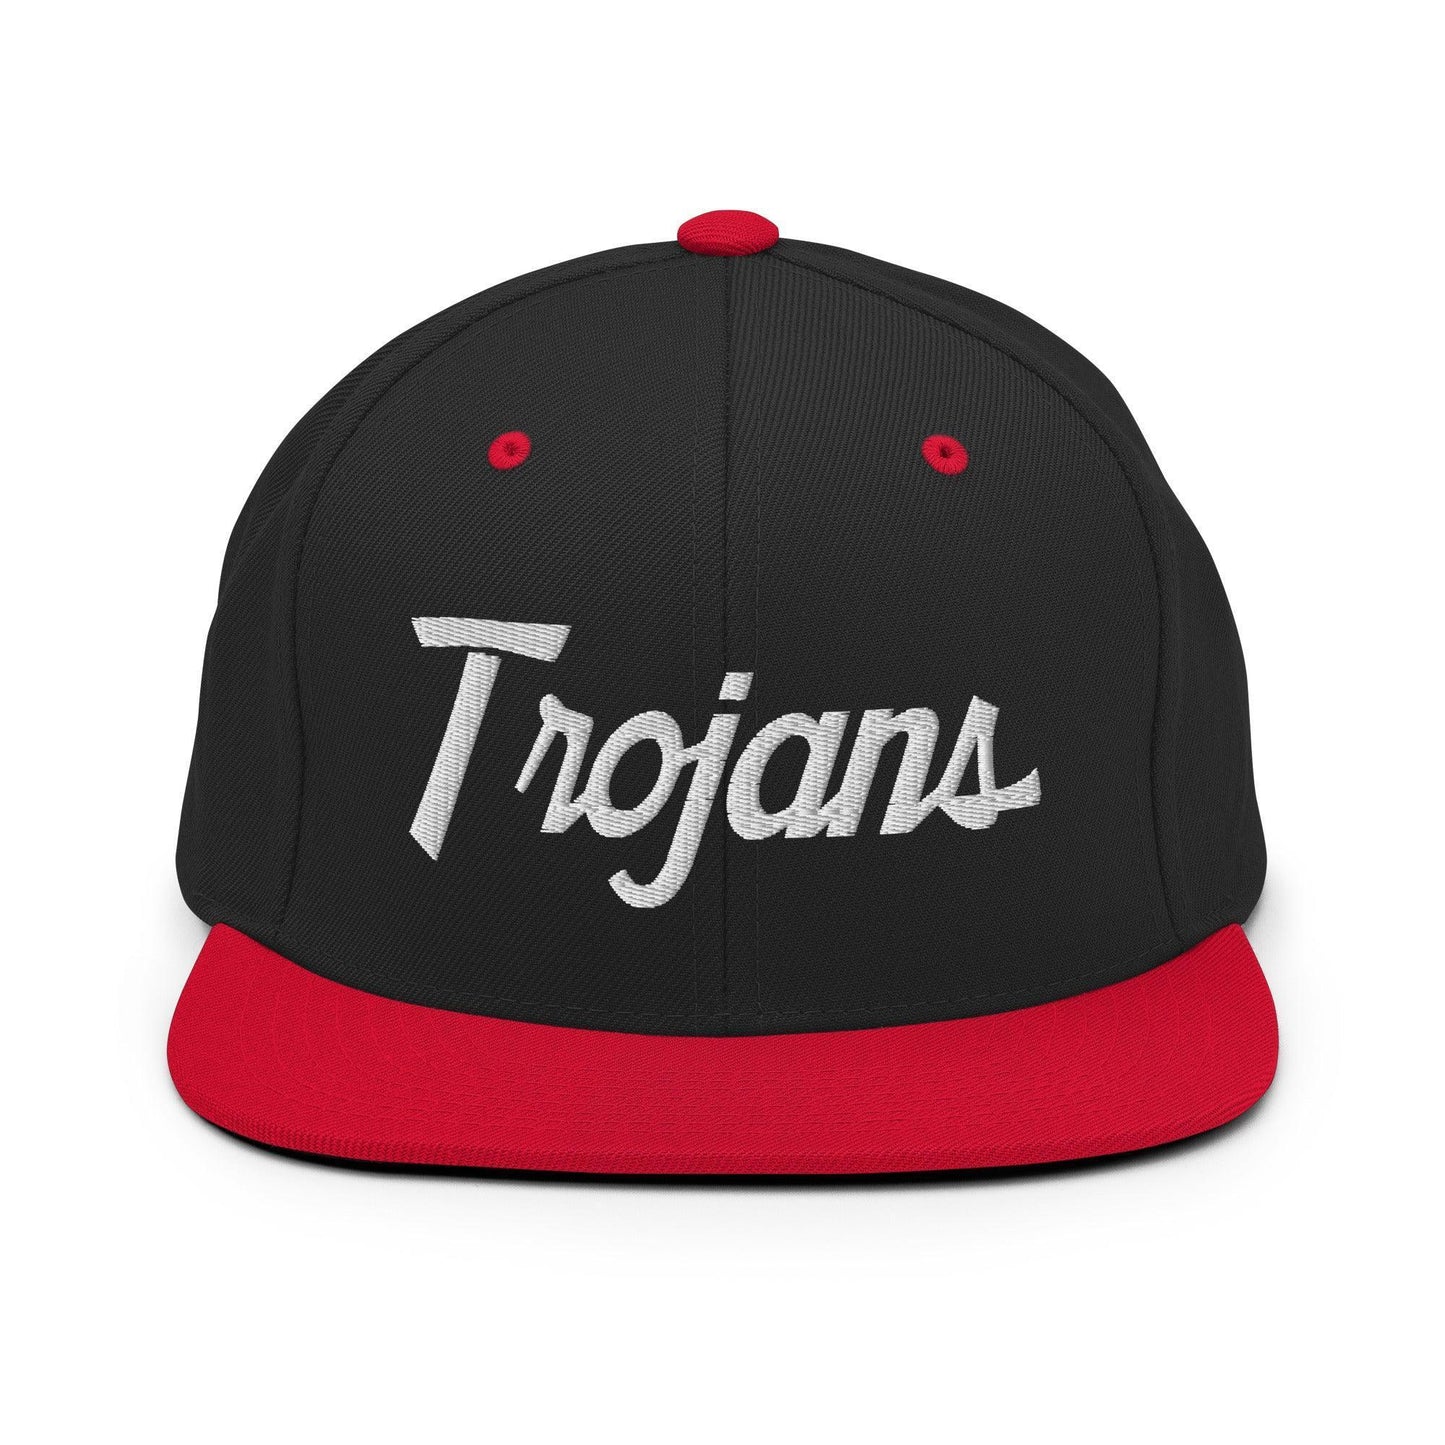 Trojans School Mascot Script Snapback Hat Black Red